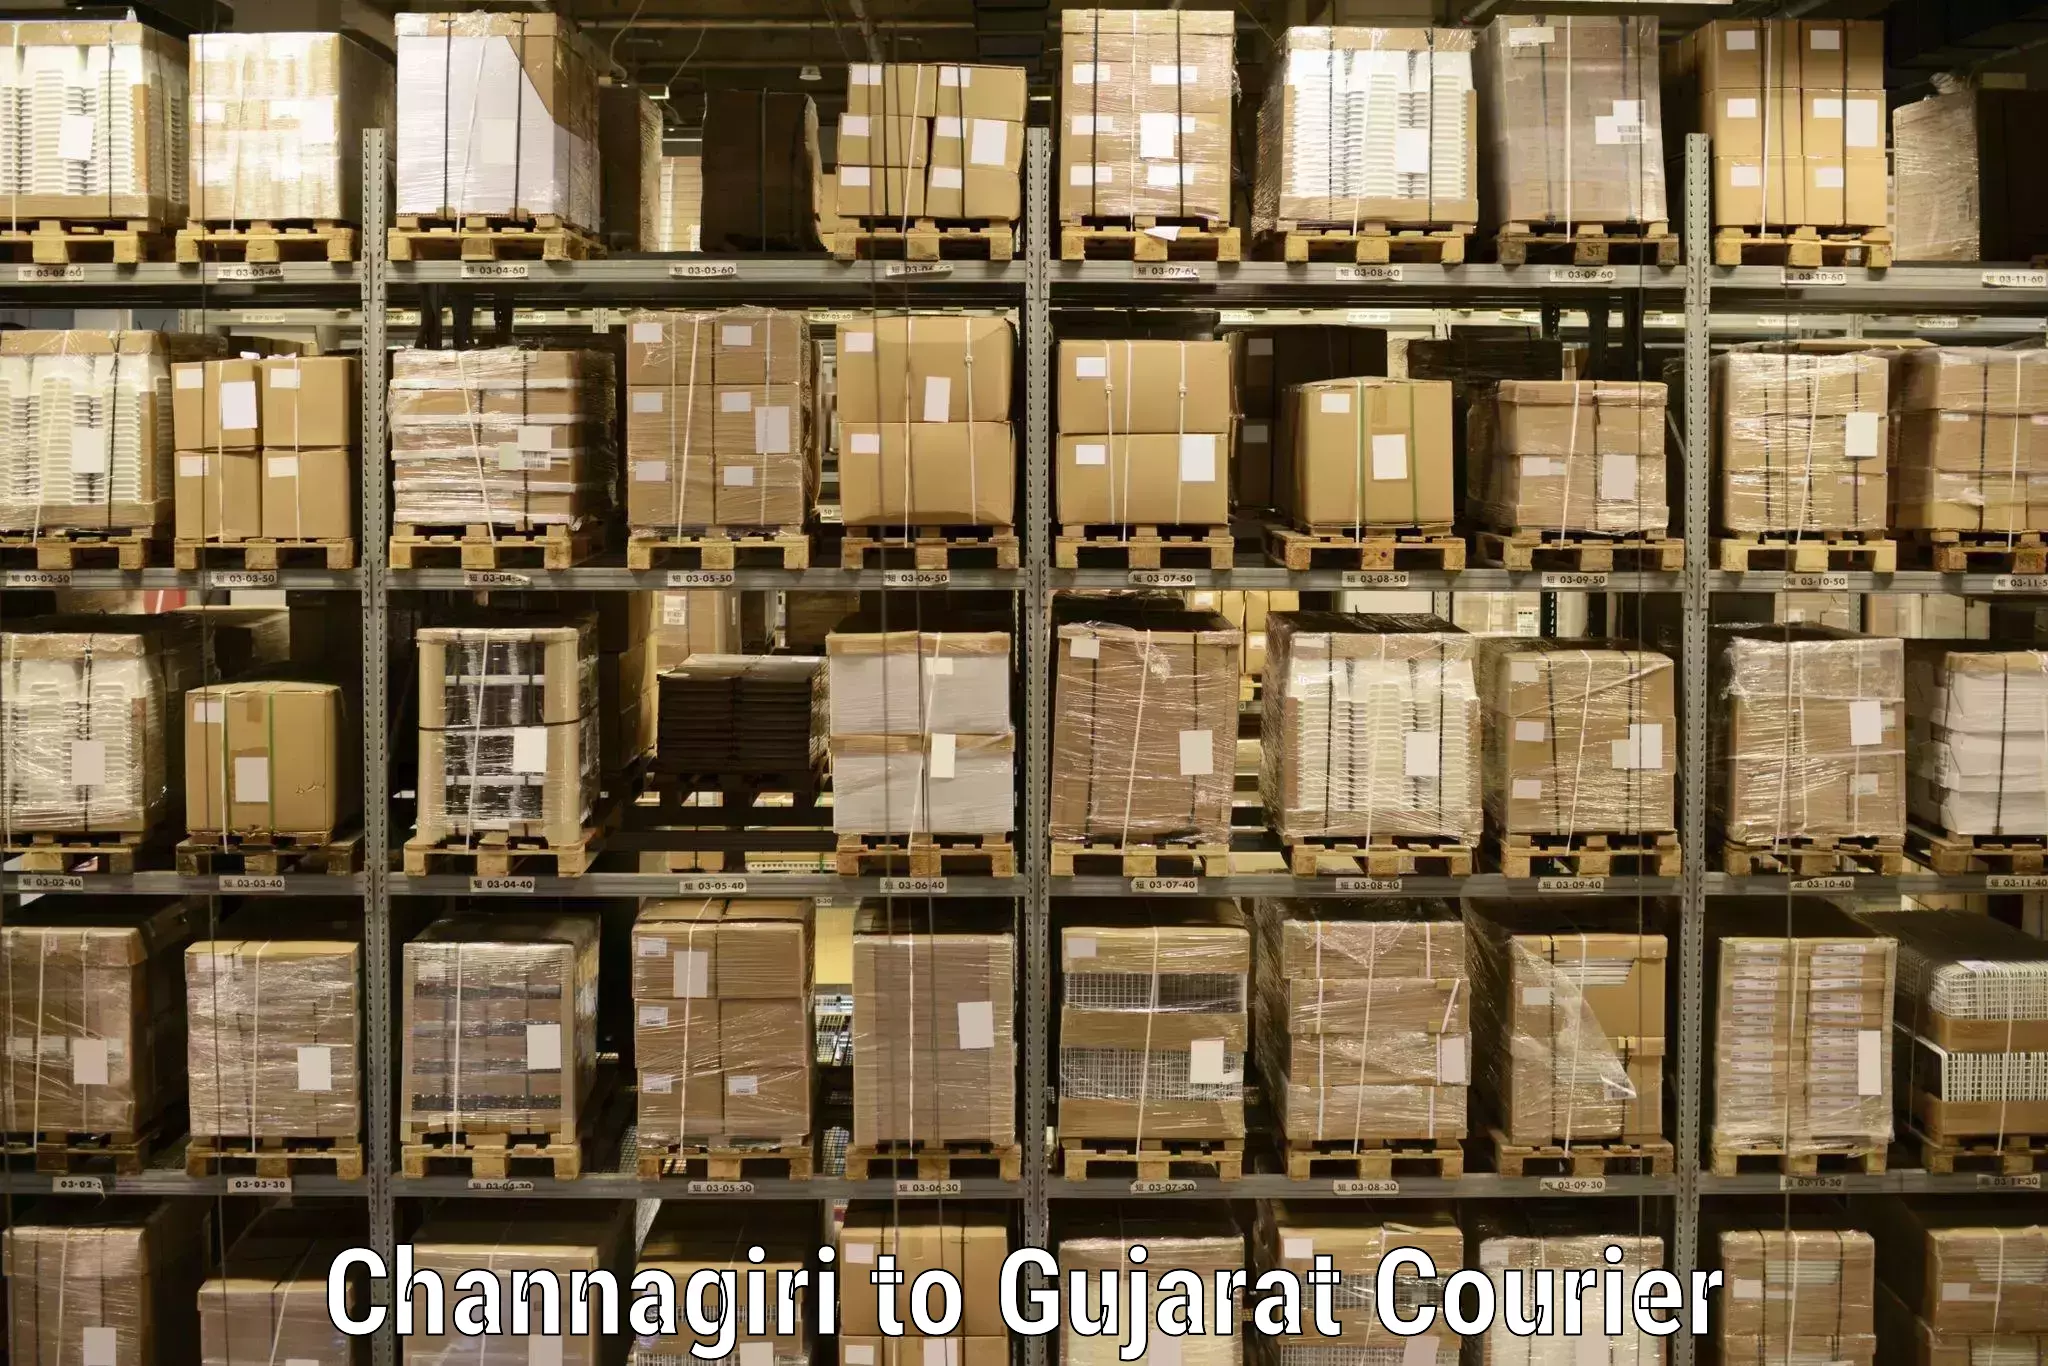 Speedy delivery service Channagiri to Gandhinagar